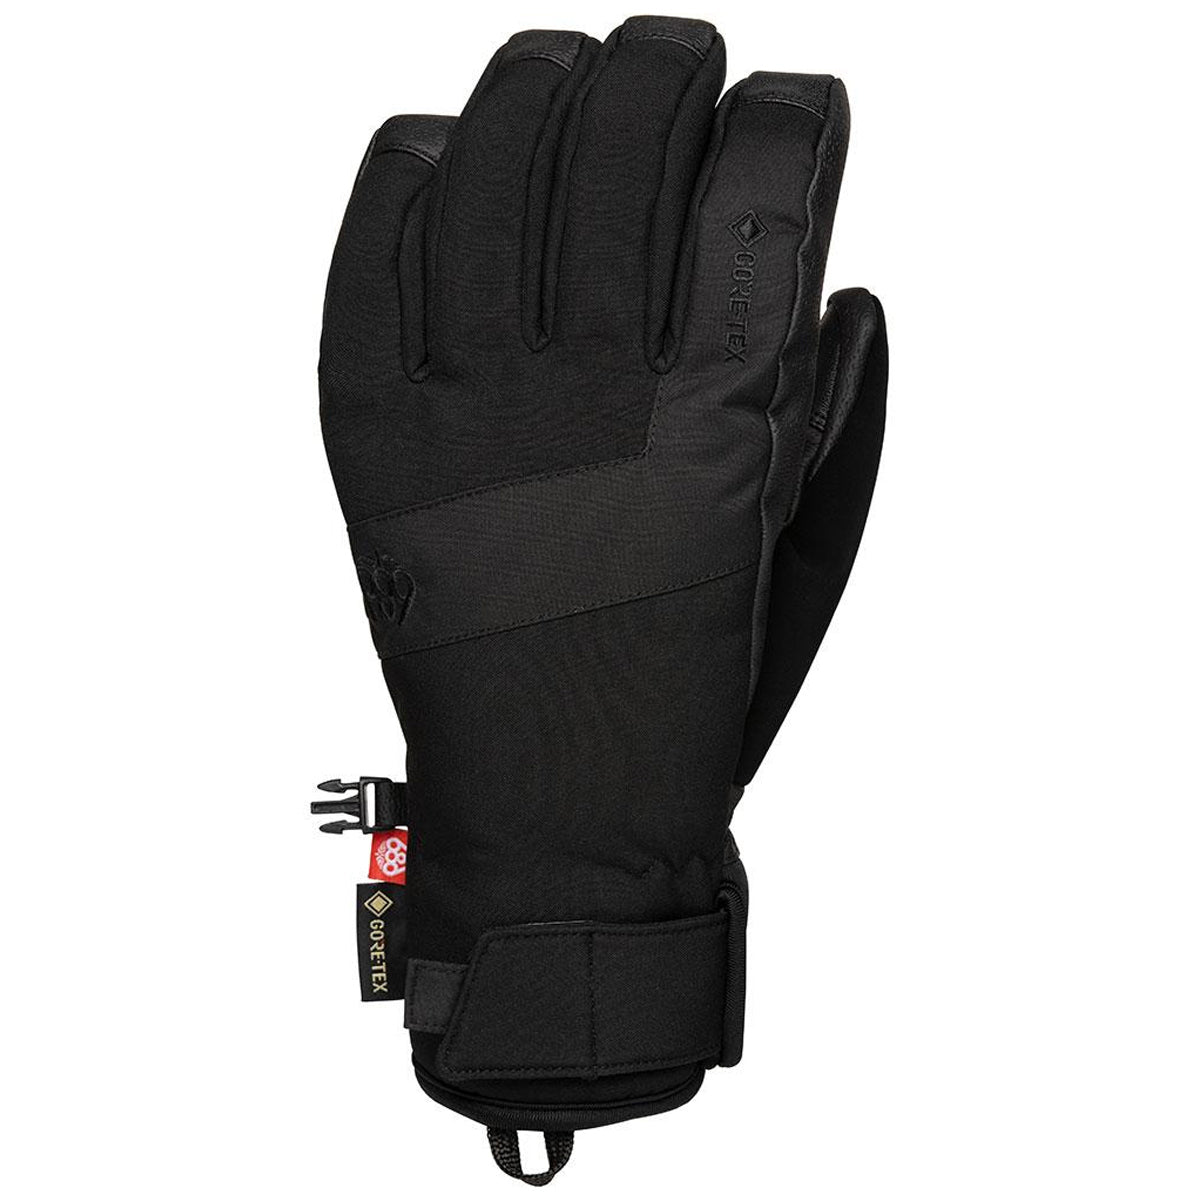 686 Gore Linear Under Cuff Snowboard Gloves - Black image 1